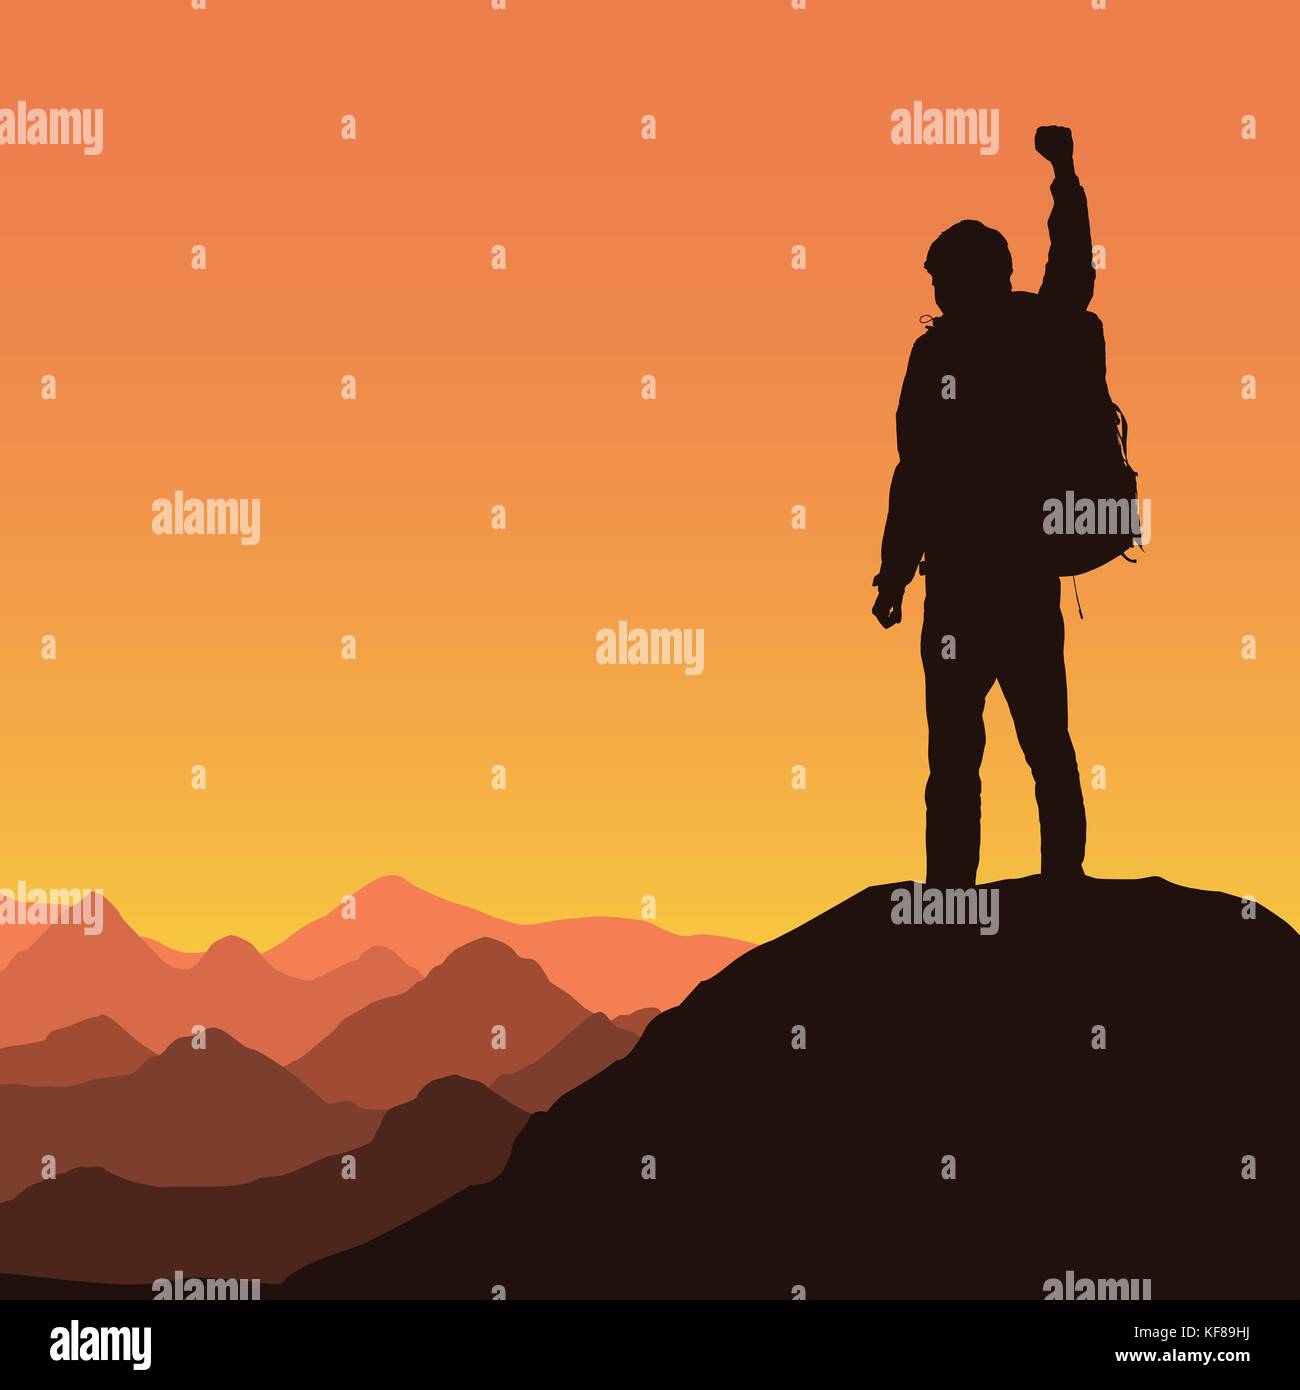 Vector illustration d'un paysage de montagne avec une silhouette réaliste de l'alpiniste au sommet d'un rocher avec un geste gagnant sous un ciel orange Illustration de Vecteur